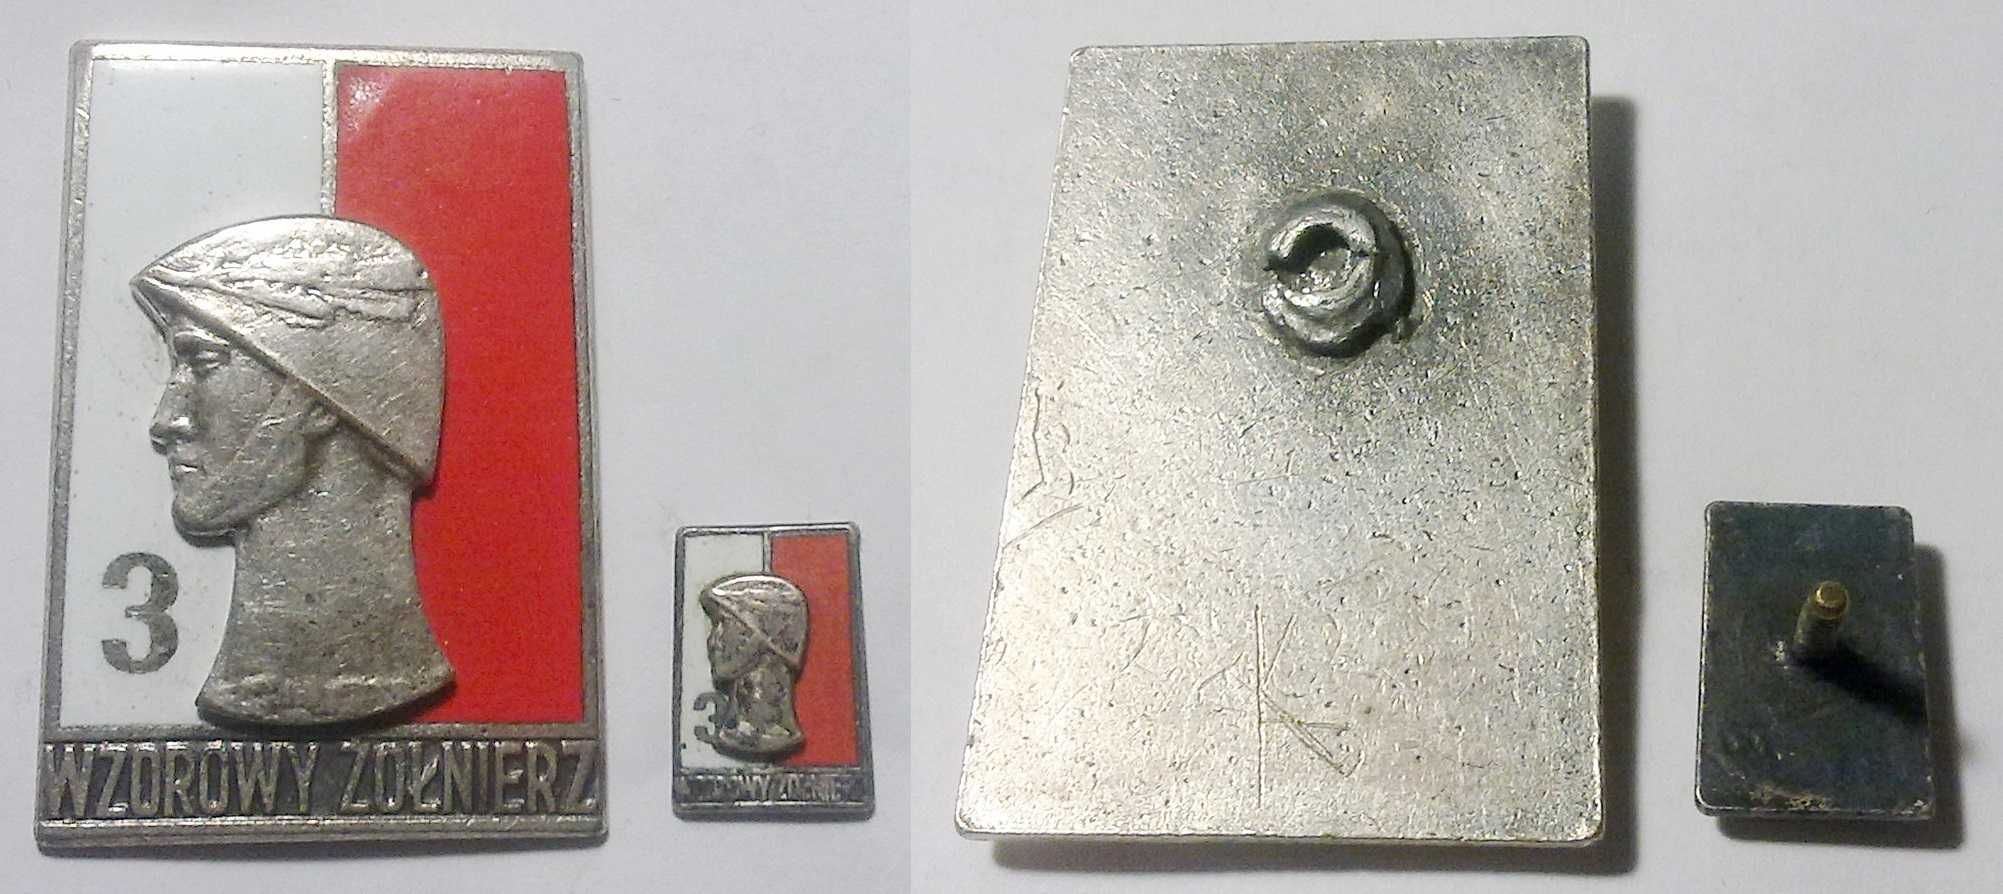 Odznaka wzorowy żołnierz wz. 68 wzór z 1968 roku PRL